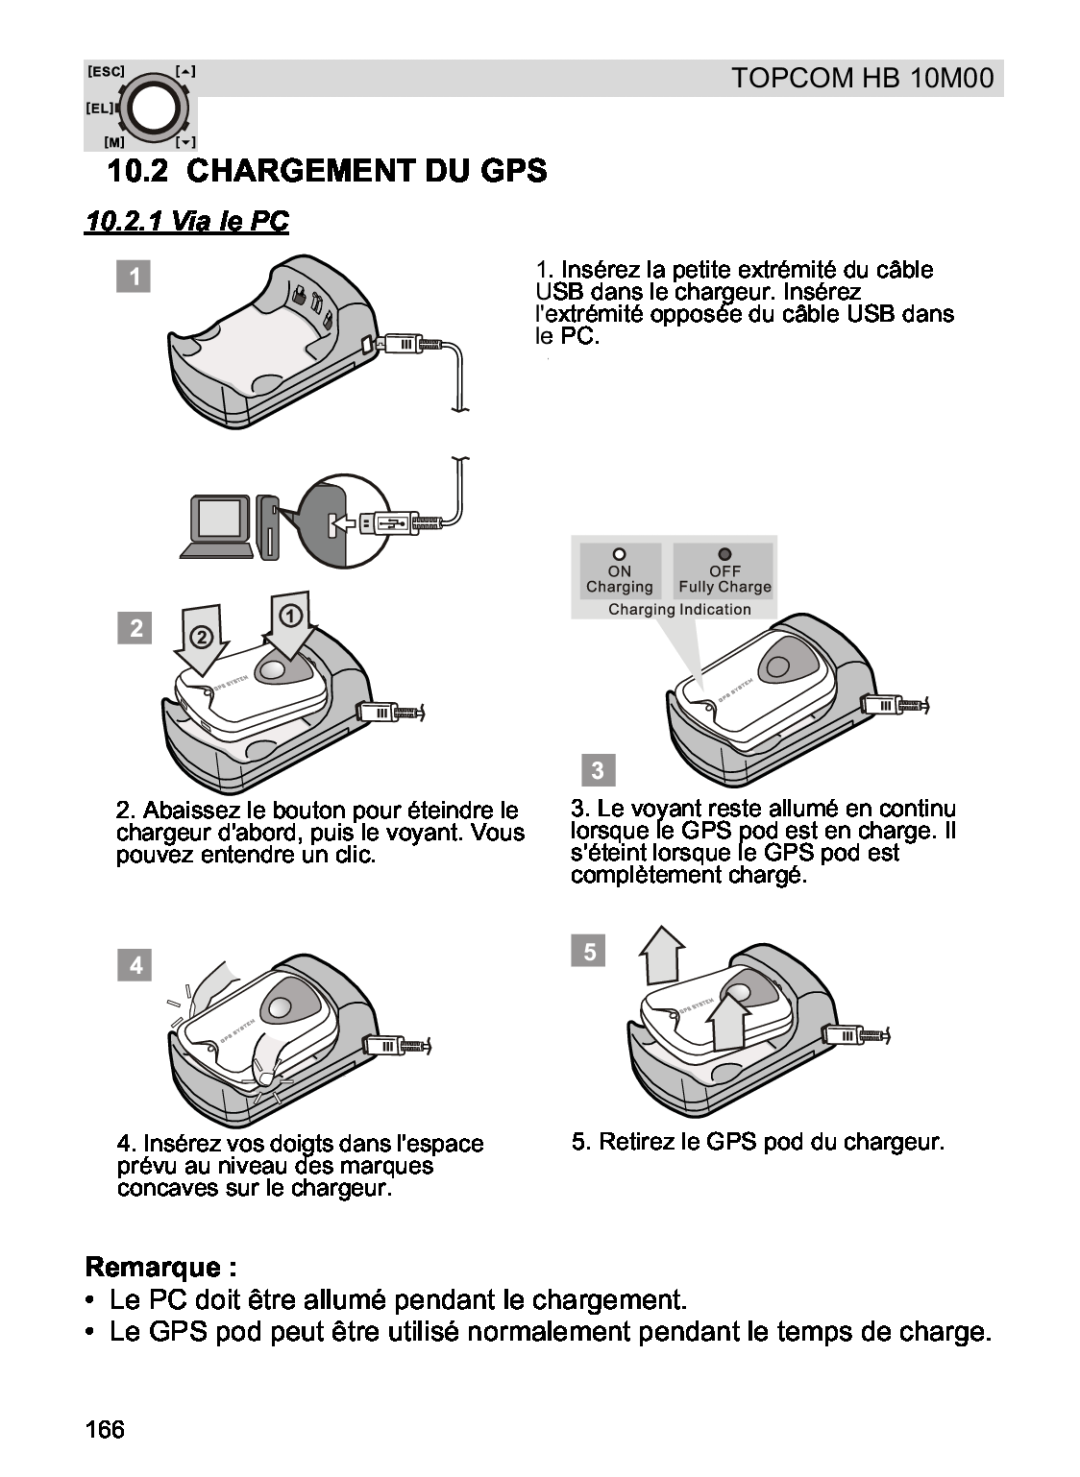 Topcom HB 10M00 manual Chargement Du Gps, Via le PC, Remarque 